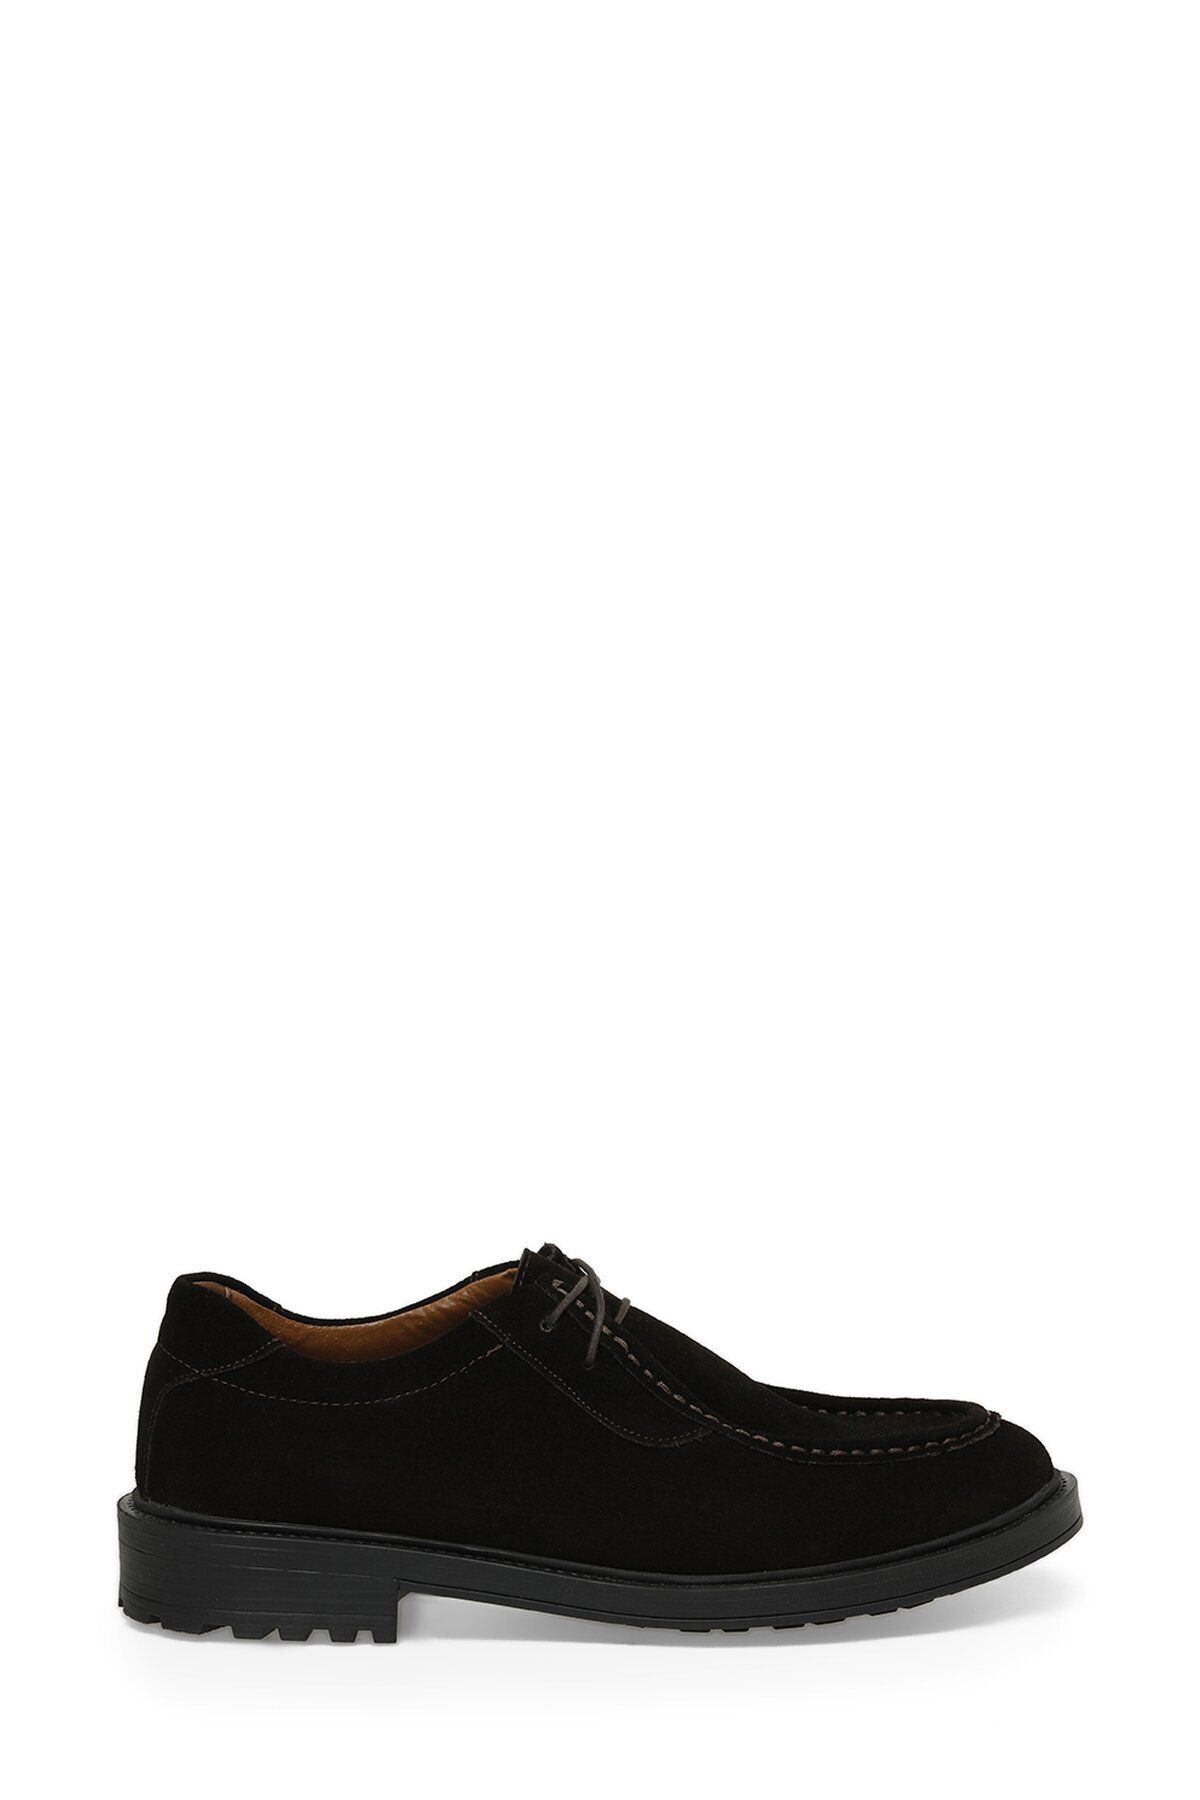 Garamond RODAN 3PR Kahverengi Erkek Klasik Ayakkabı